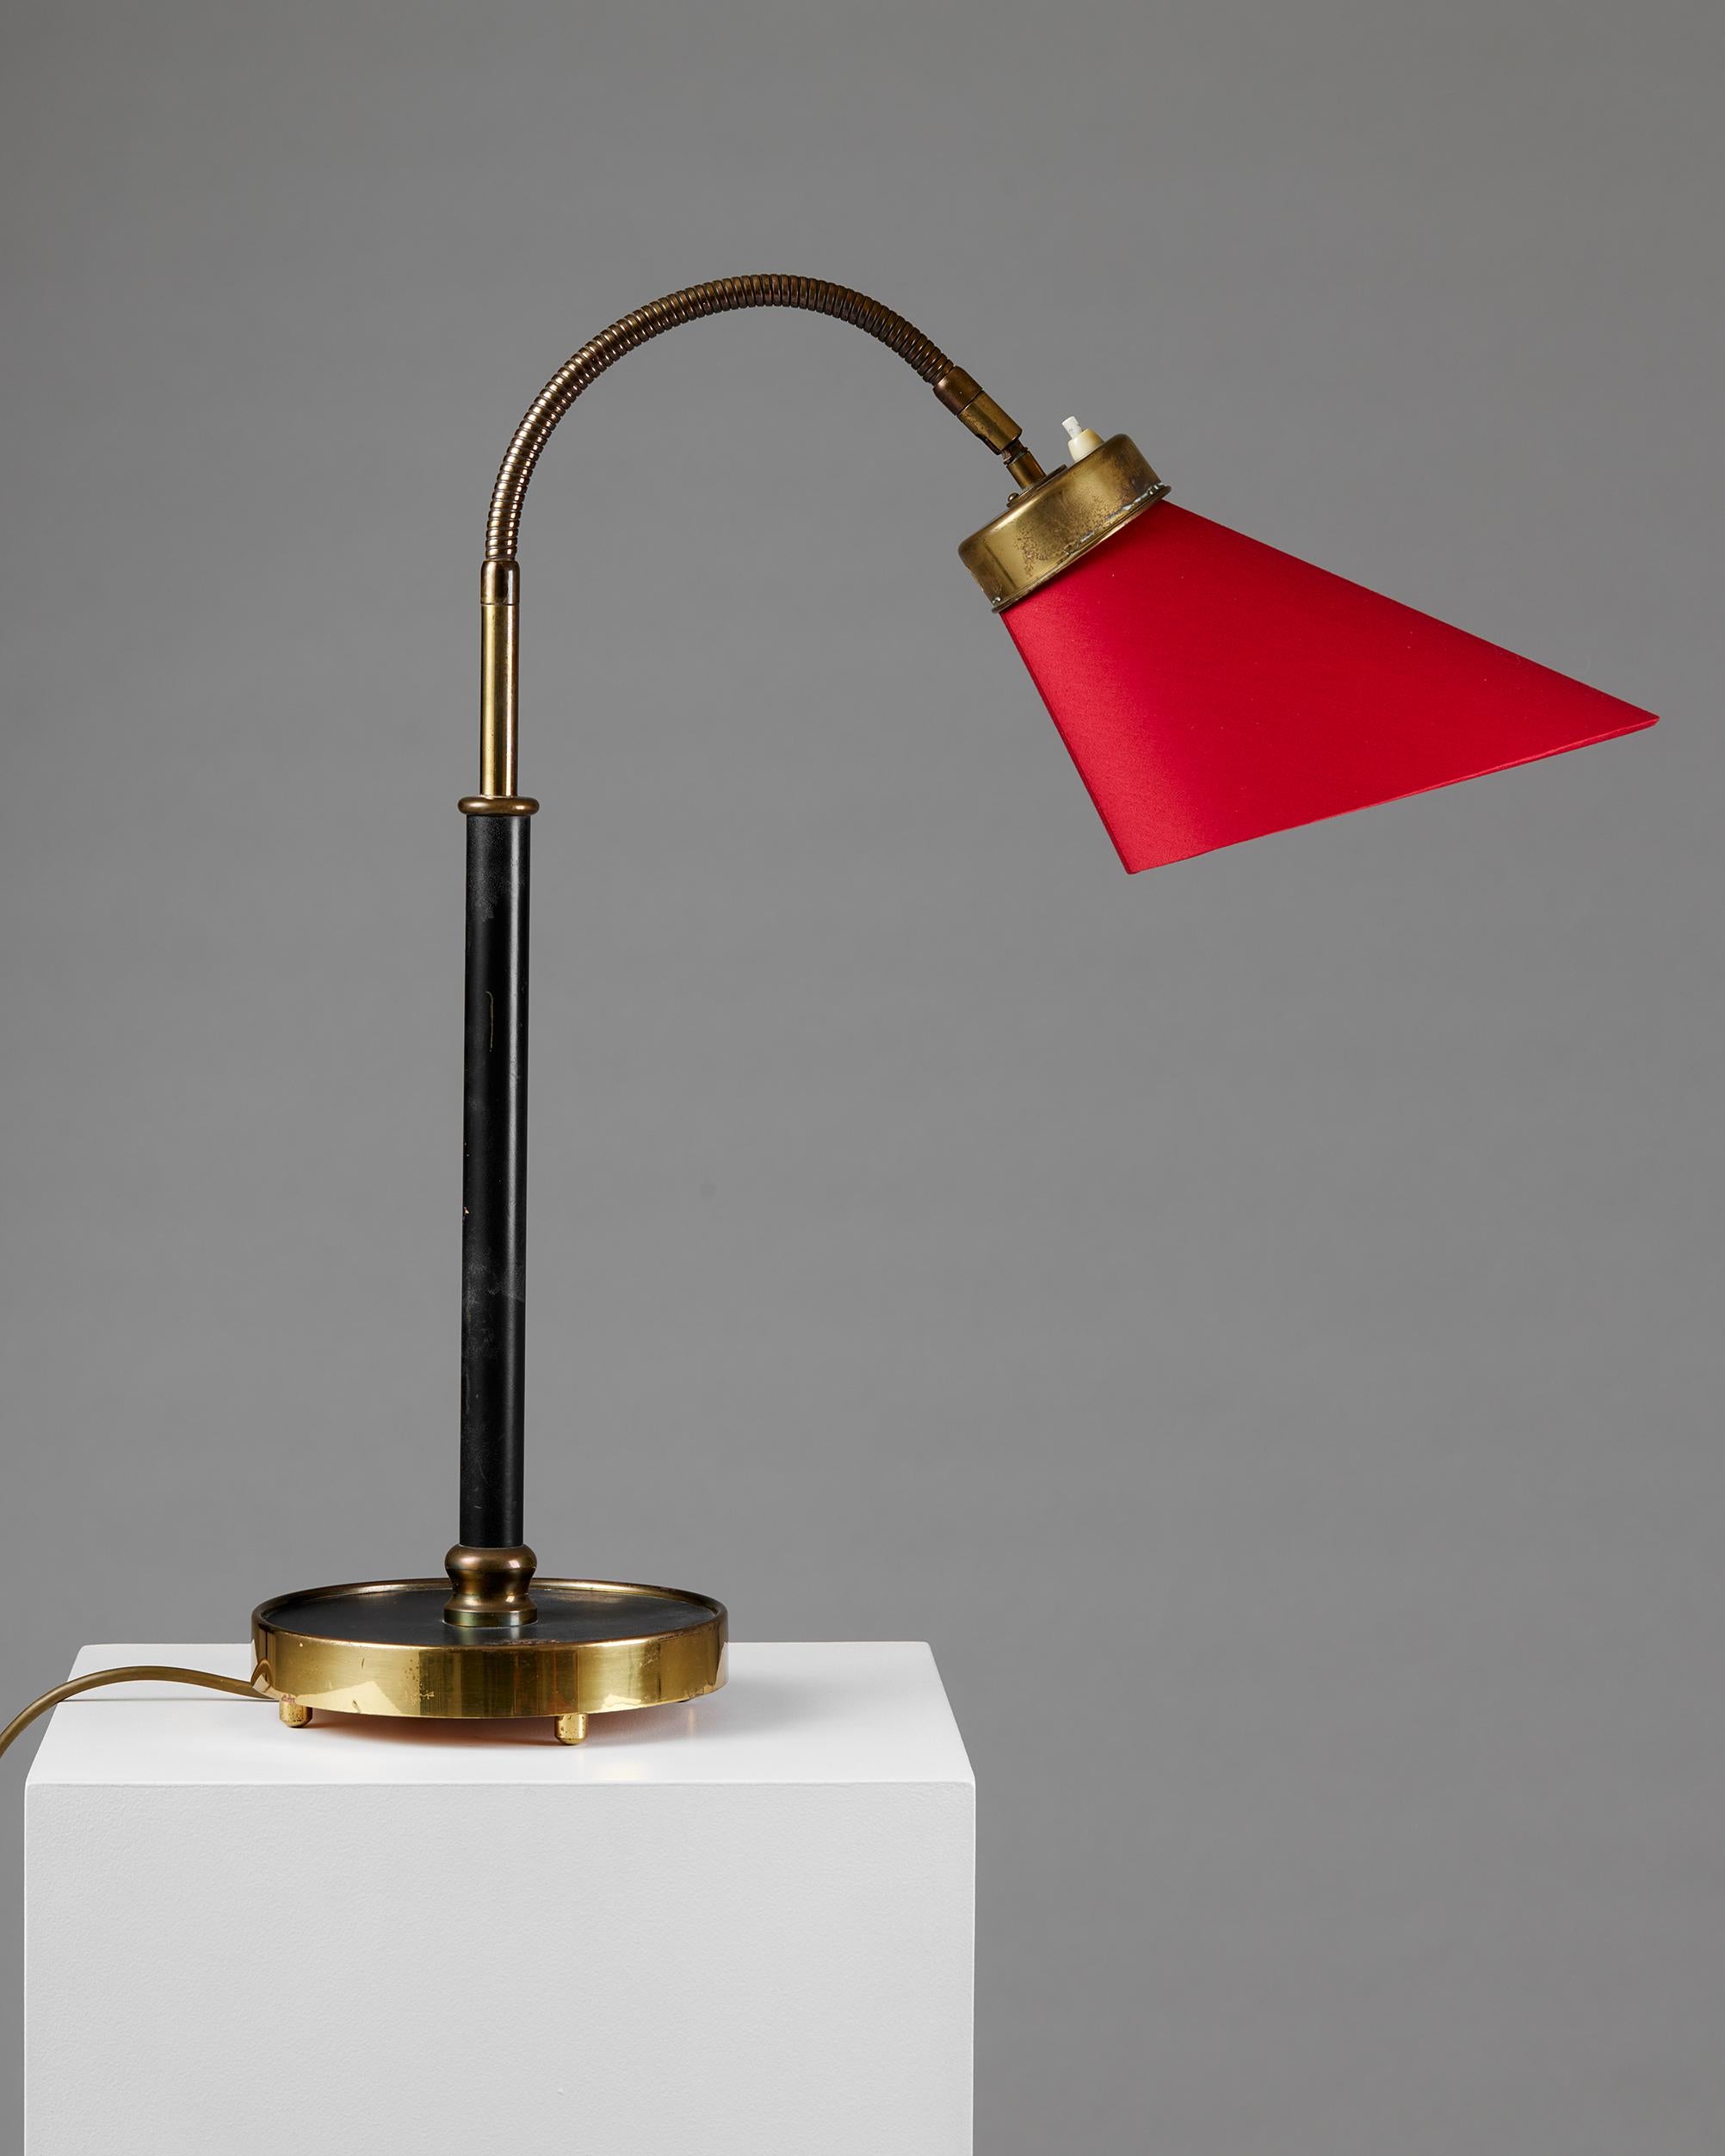 Suédois Lampe de bureau modèle 2434 conçue par Josef Frank pour Svenskt Tenn, Suède, 1939 rouge en vente